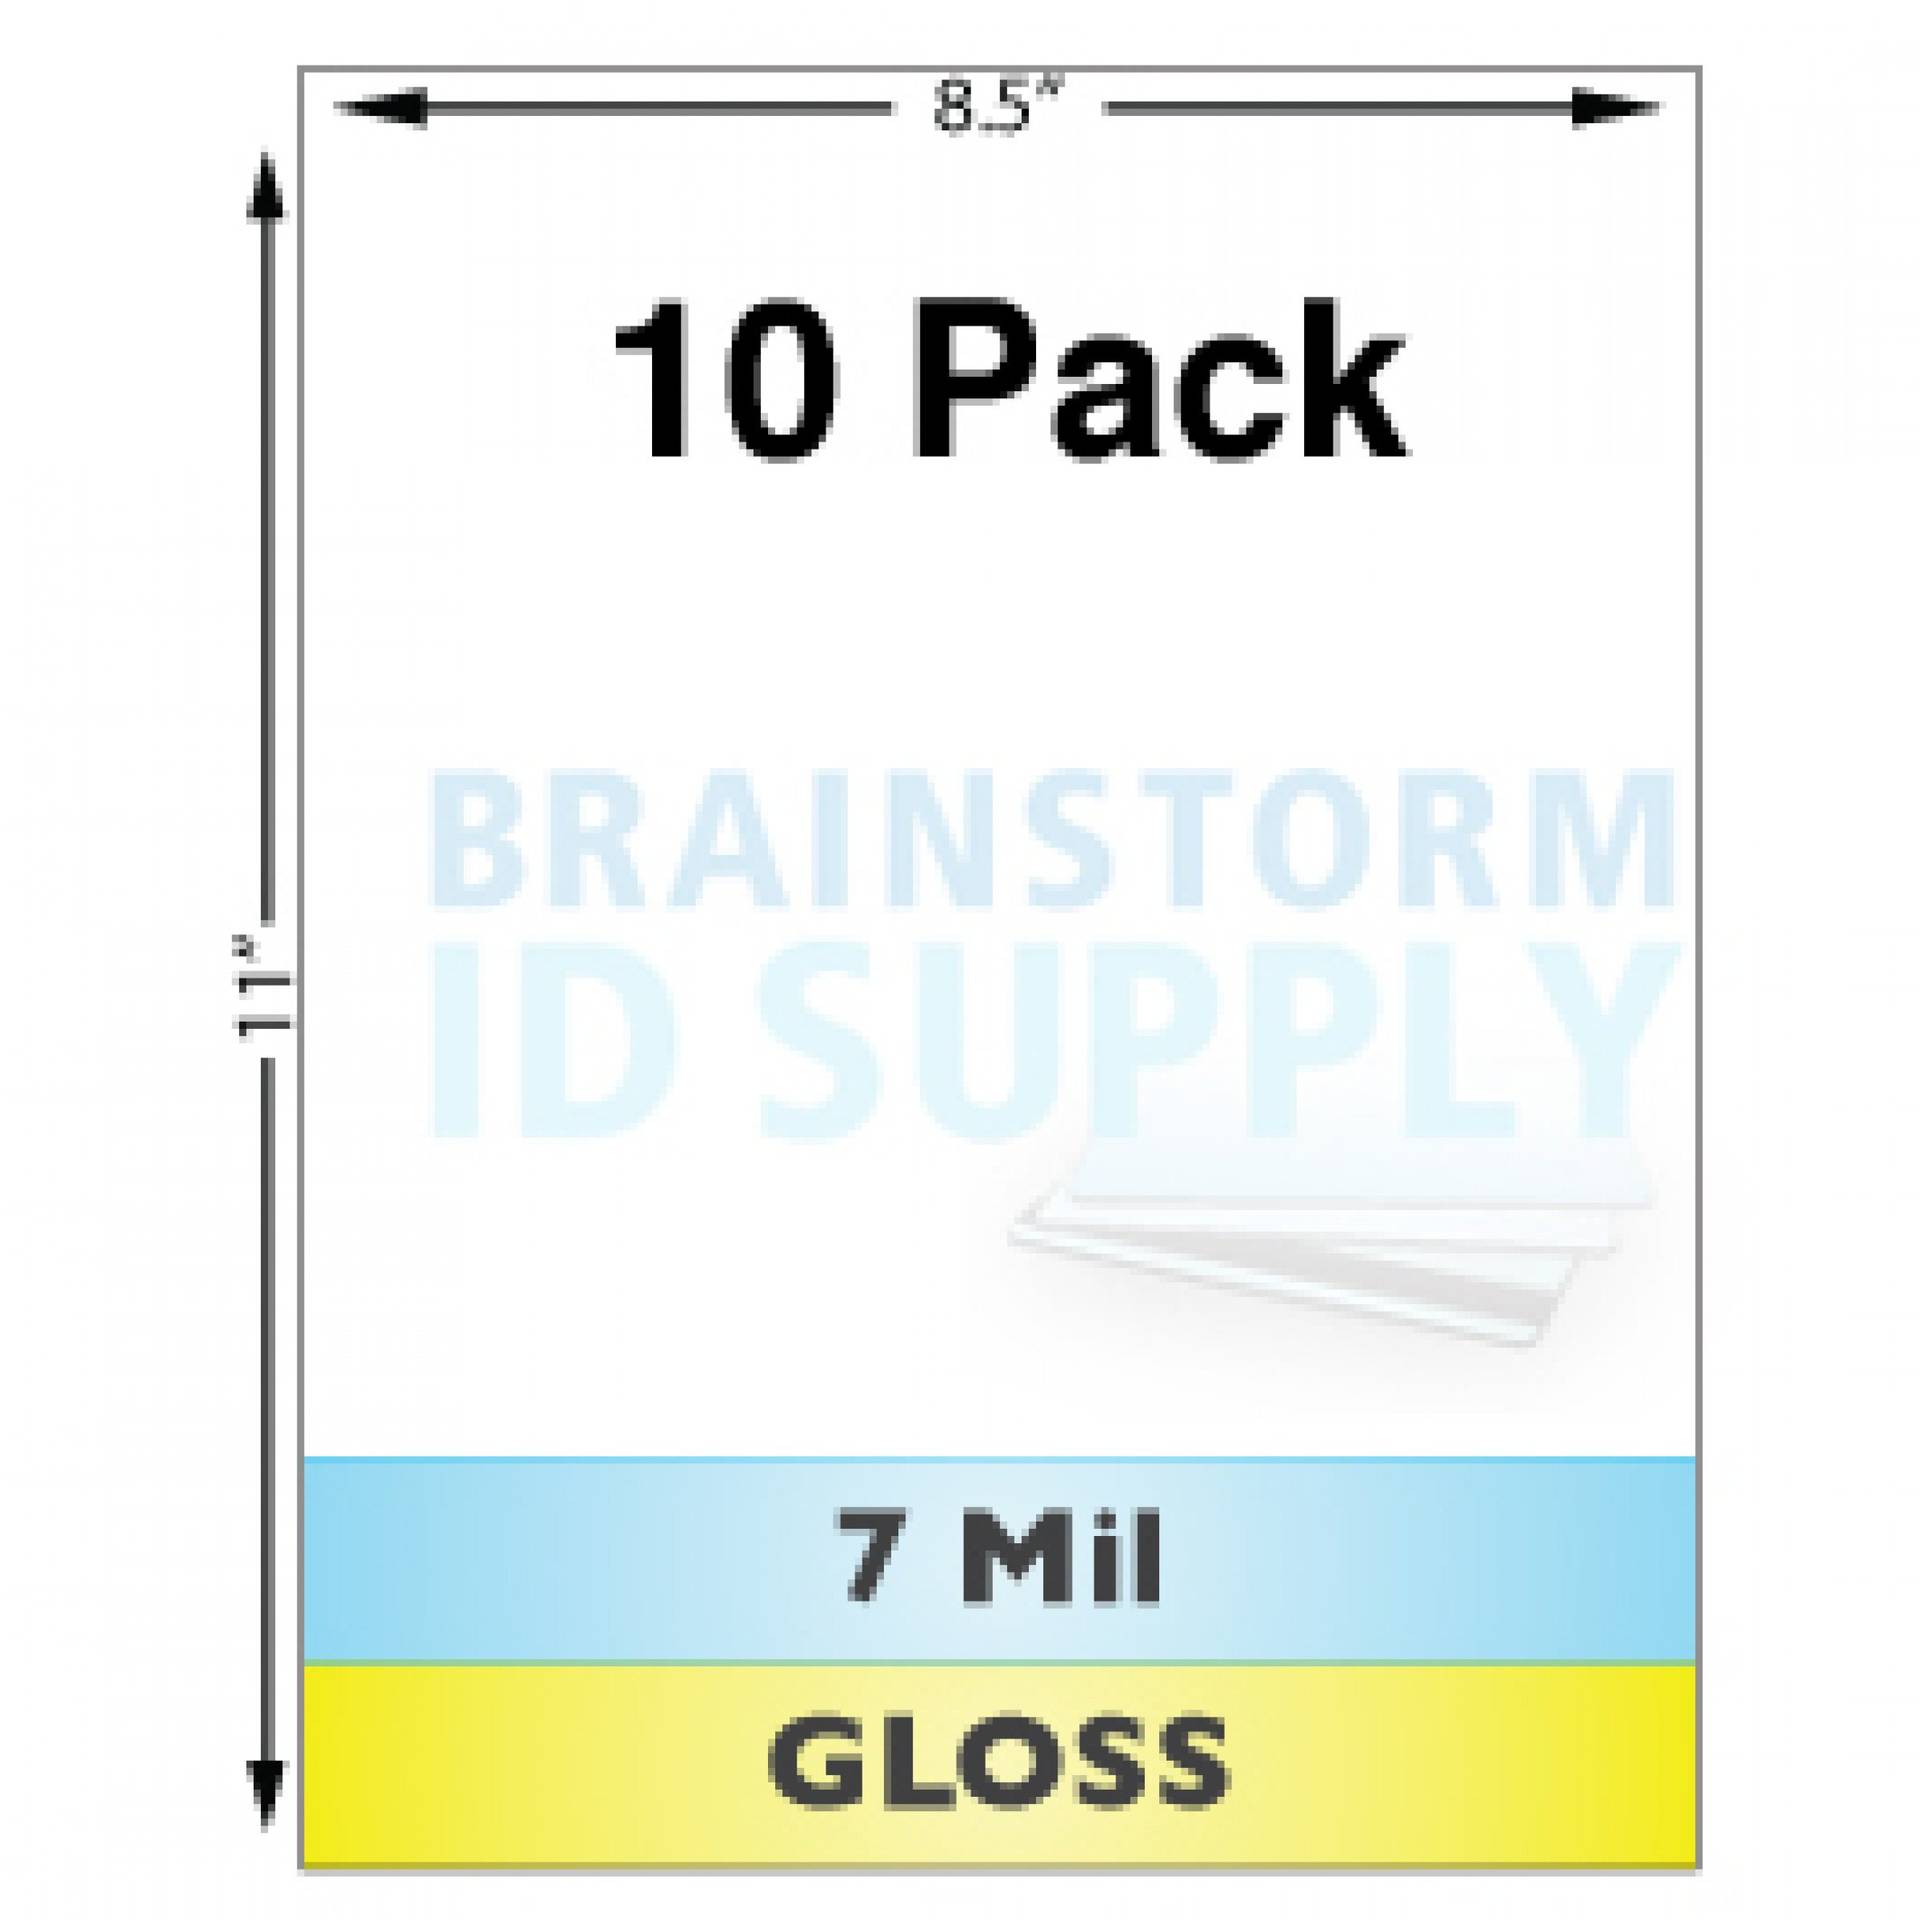 7 Mil Gloss Full Sheet Laminate - 10 Pack